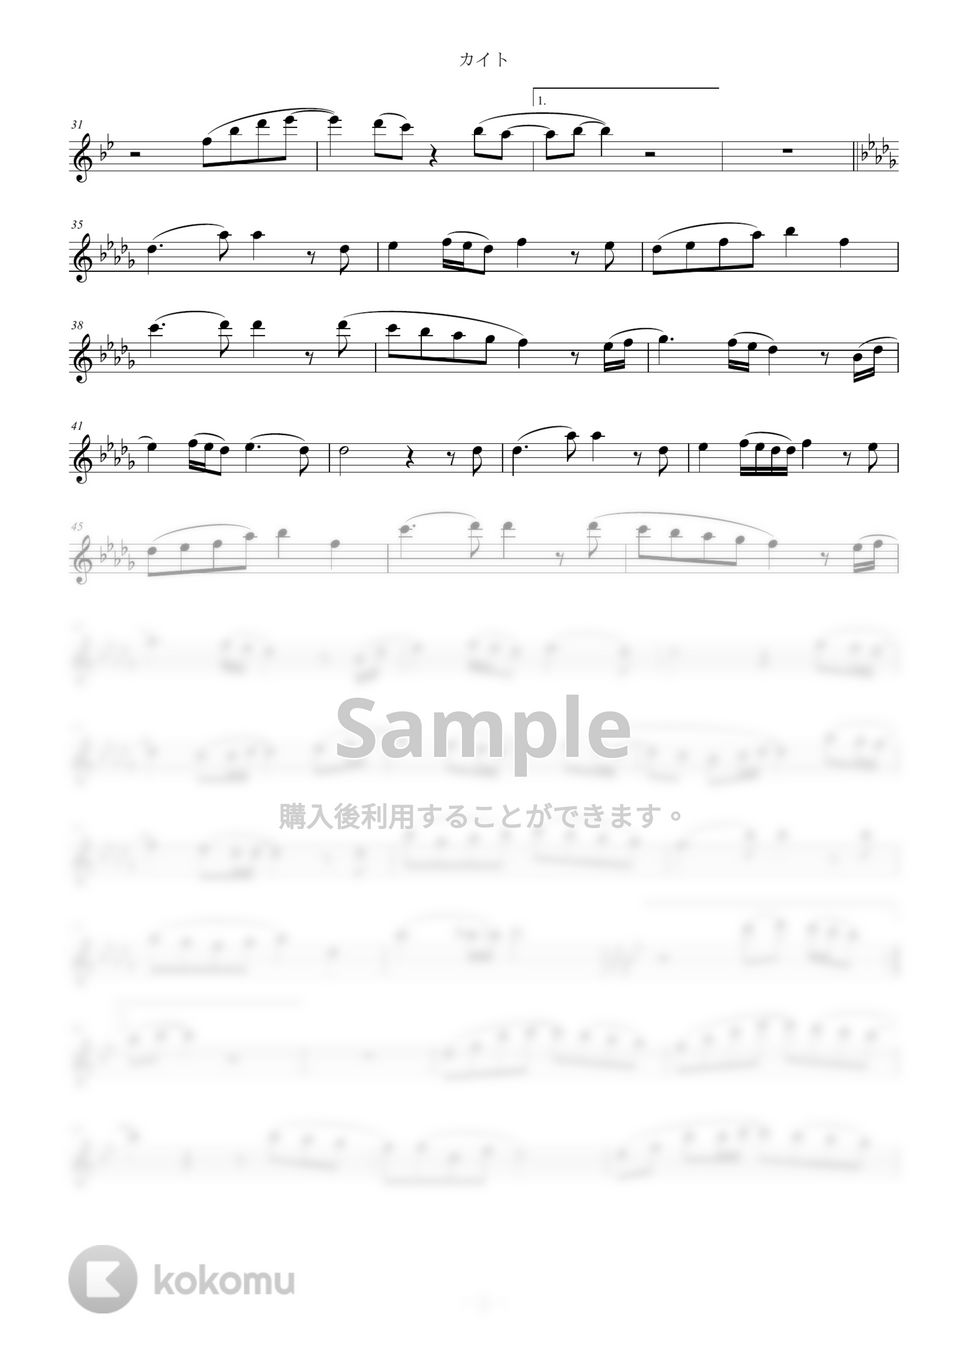 嵐 - カイト (in E♭) by y.shiori